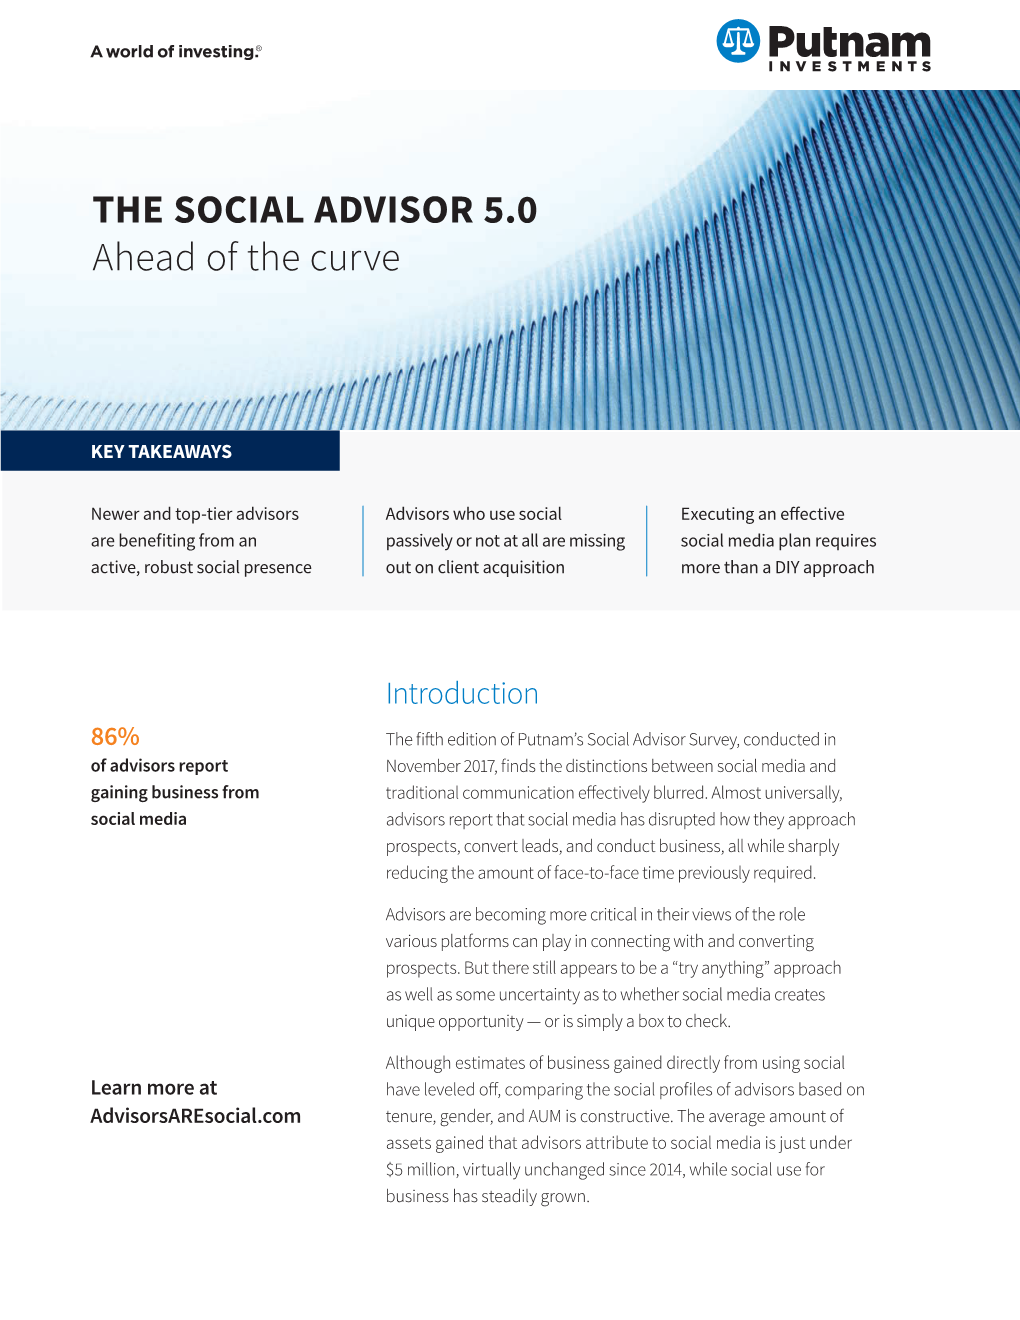 The Social Advisor 5.0: Ahead of the Curve